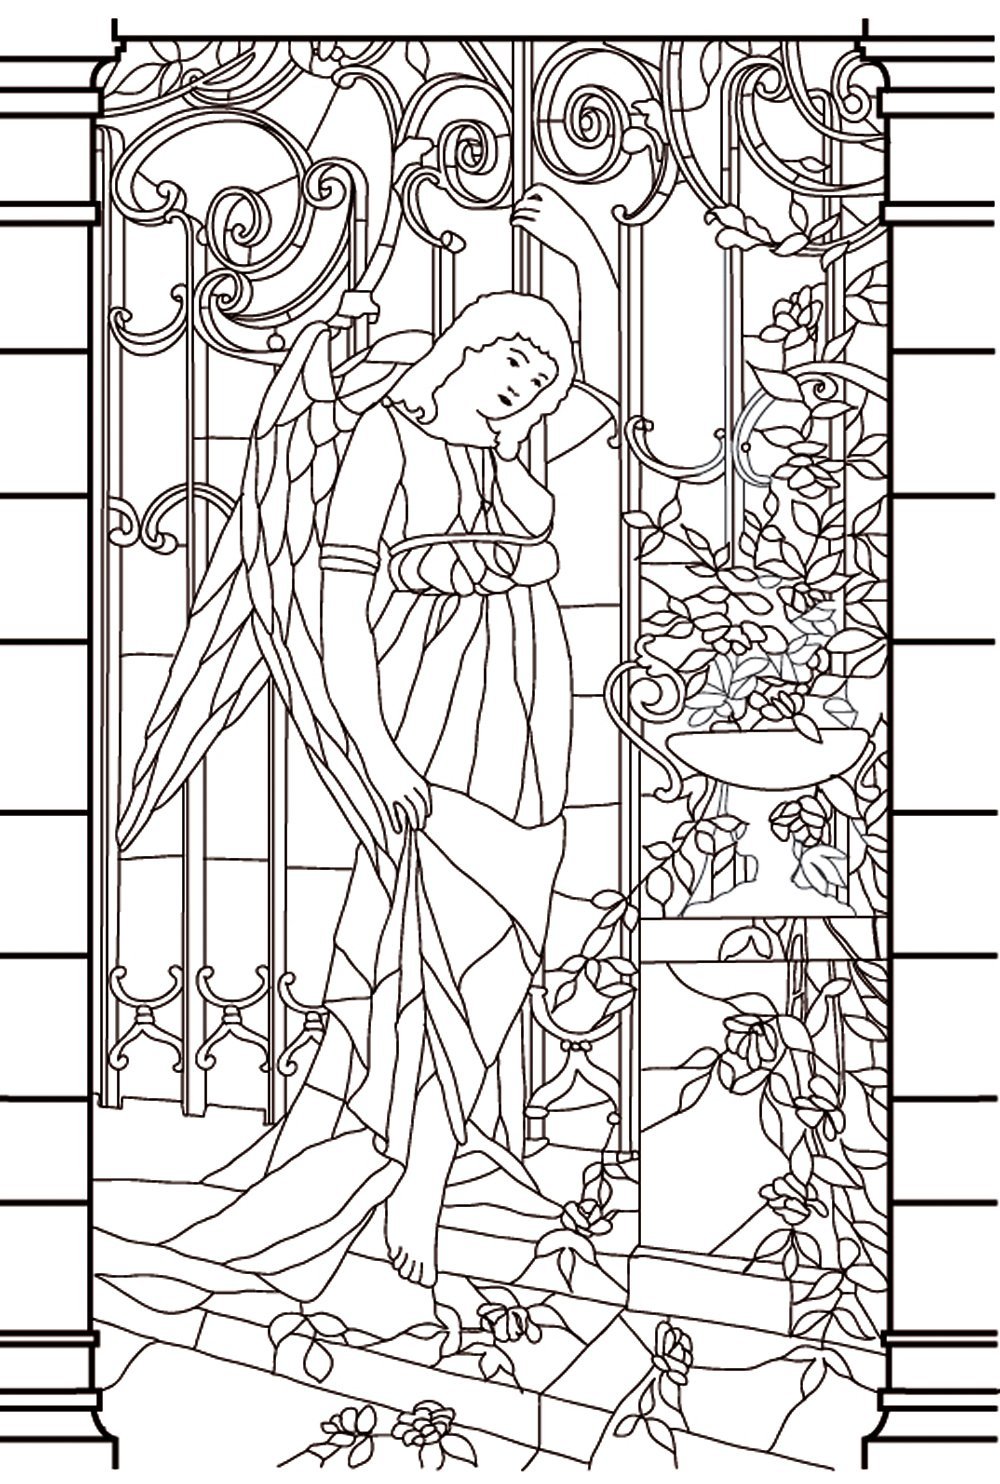 Disegno di finestra (vetro colorato) di una dea dall'aspetto malinconico, da stampare e colorare